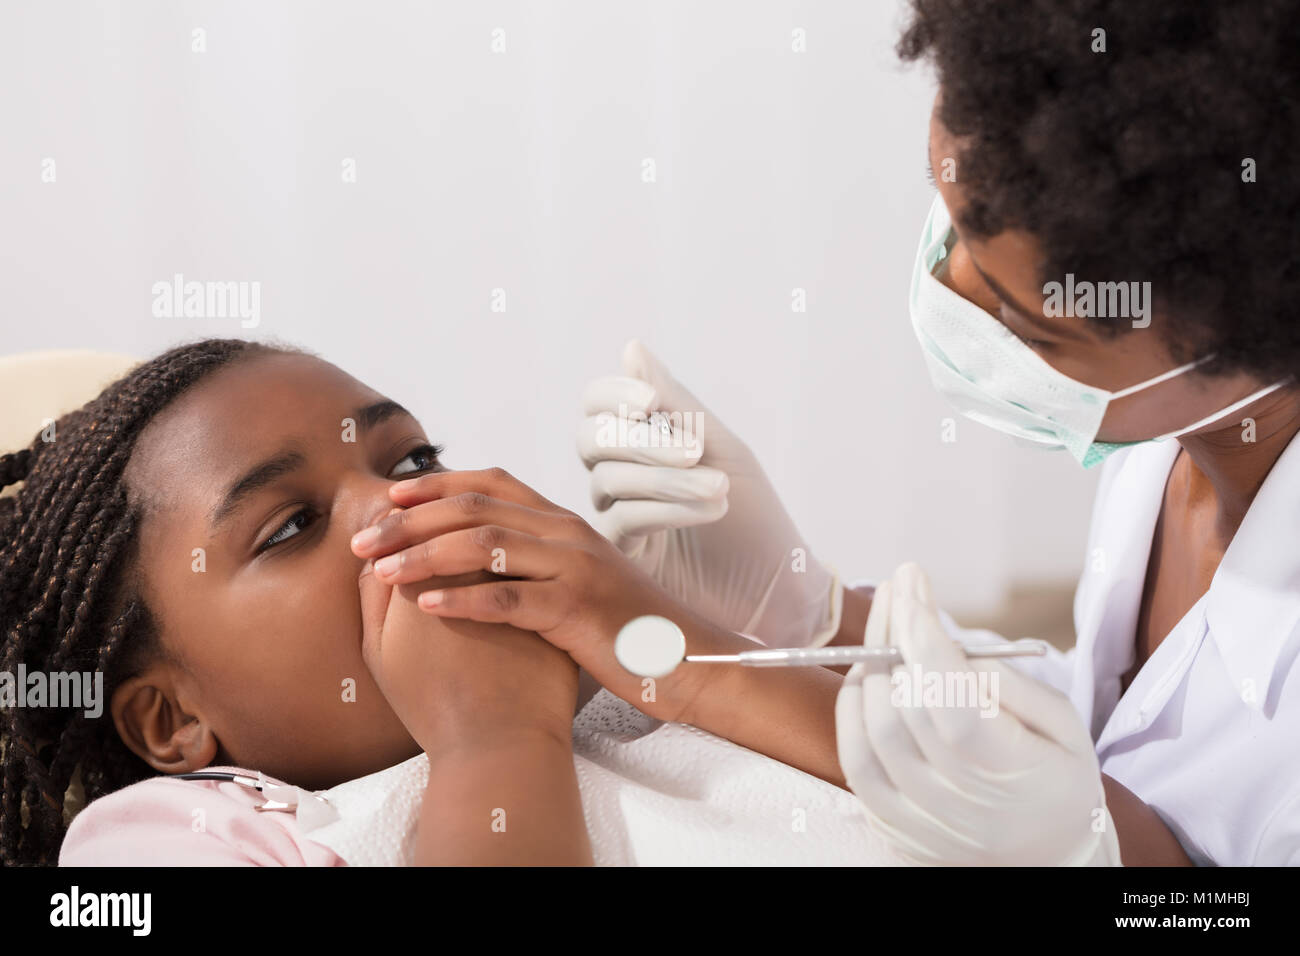 Spaventata ragazza che copre la bocca con le mani al dentista Foto Stock